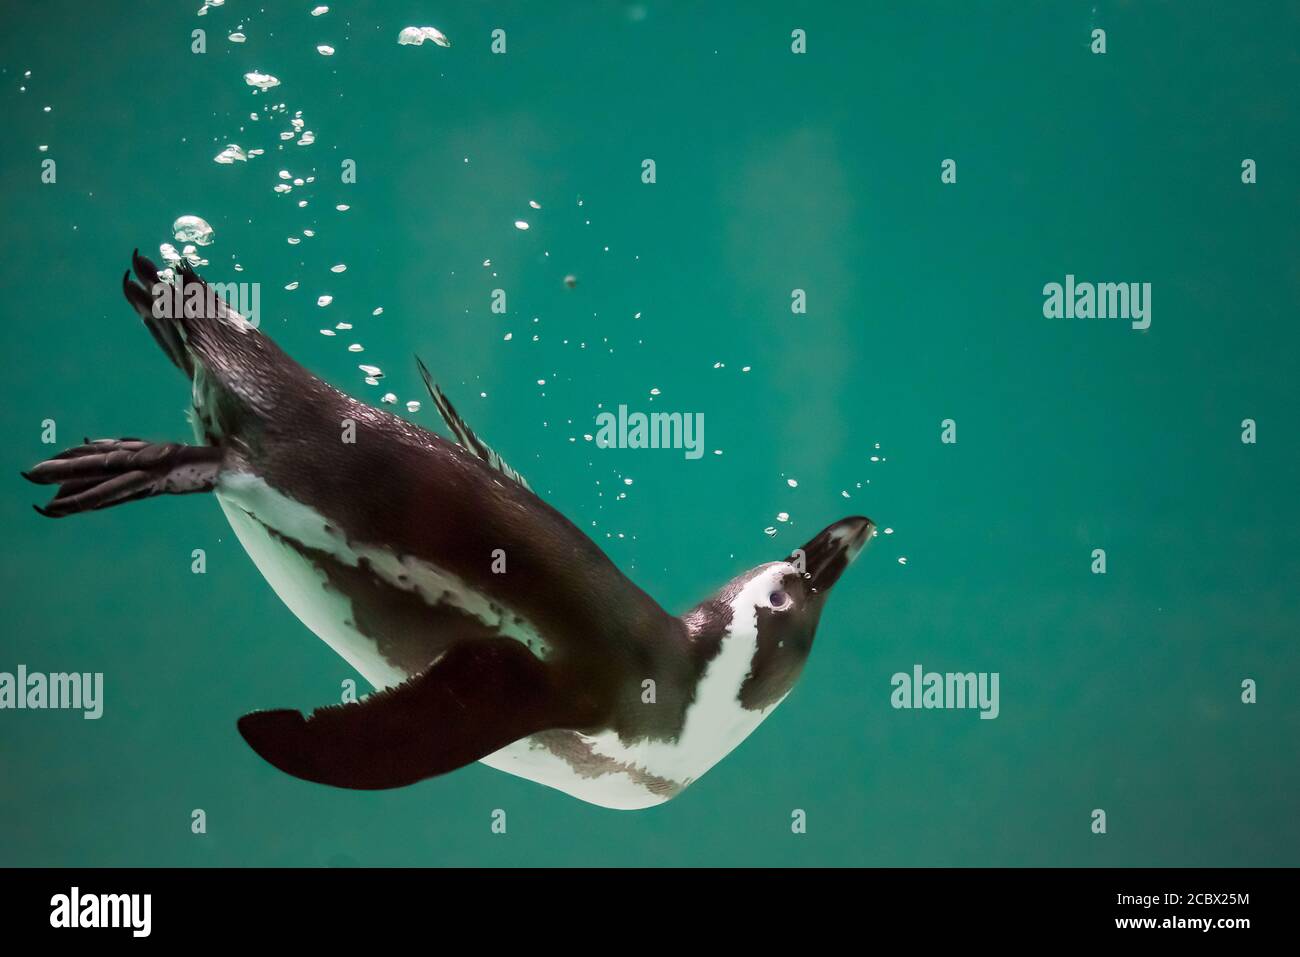 Un pinguino isolato che nuota in acqua. Pinguino africano. Sfeniscus demersus. Pinguino di Capo o pinguino sudafricano. Sfondo, spazio di copia. Foto Stock